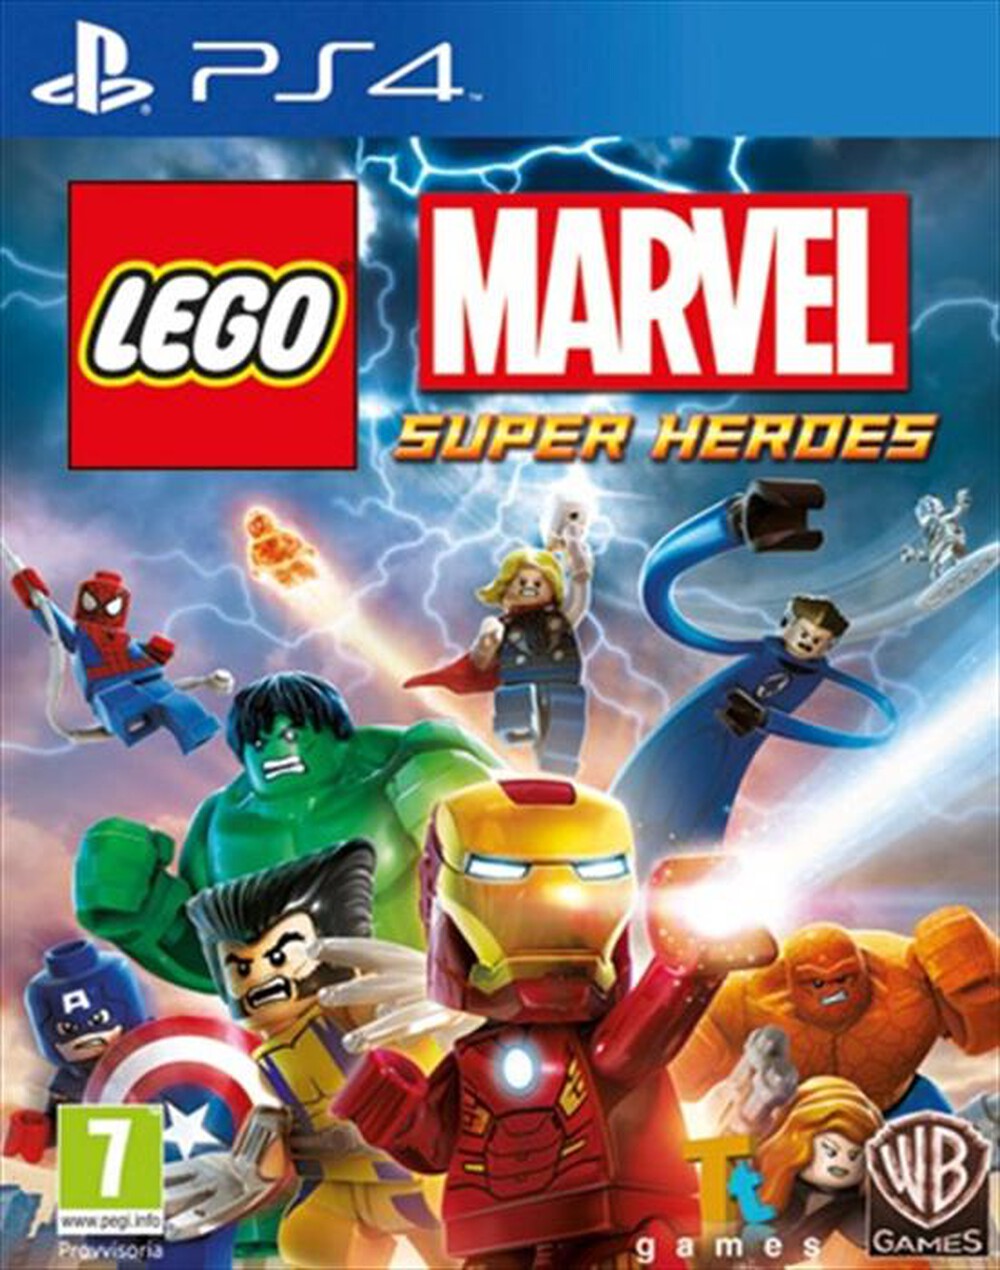 "WARNER GAMES - Lego Marvel Super Heroes PS4 - "